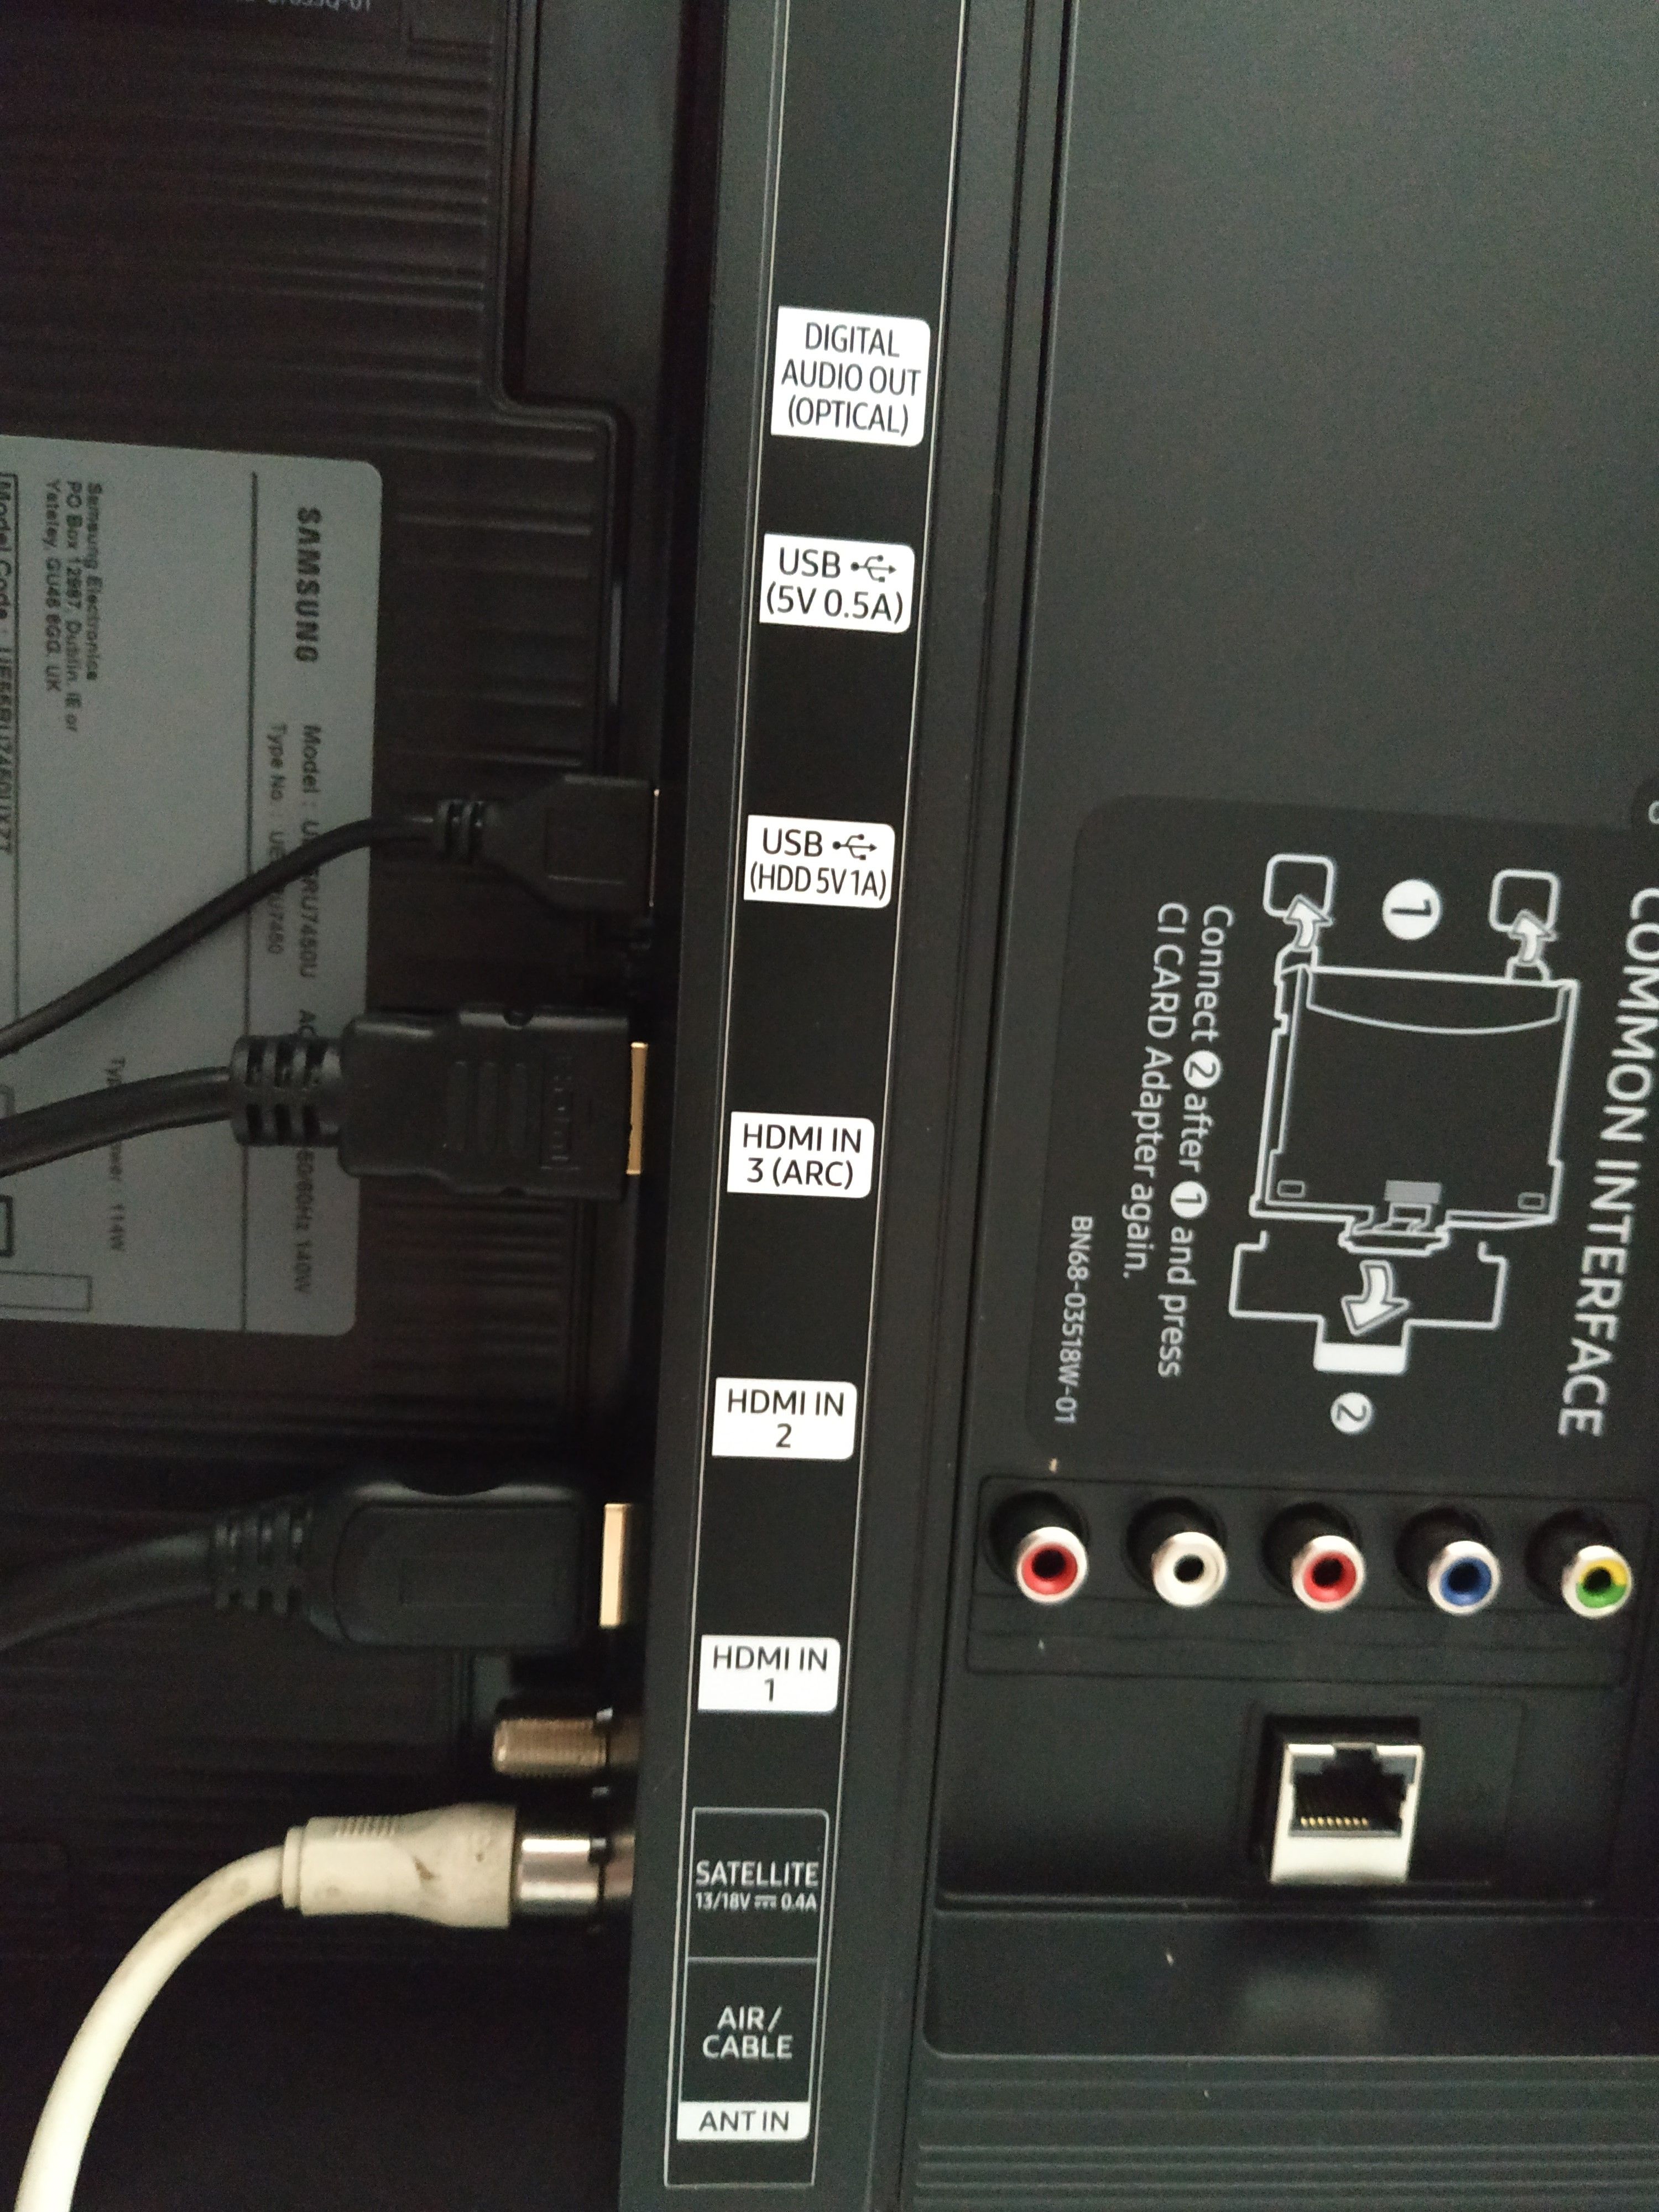 porte HDMI in uscita per UE55RU7450UXZT ? - Pagina 2 - Samsung Community